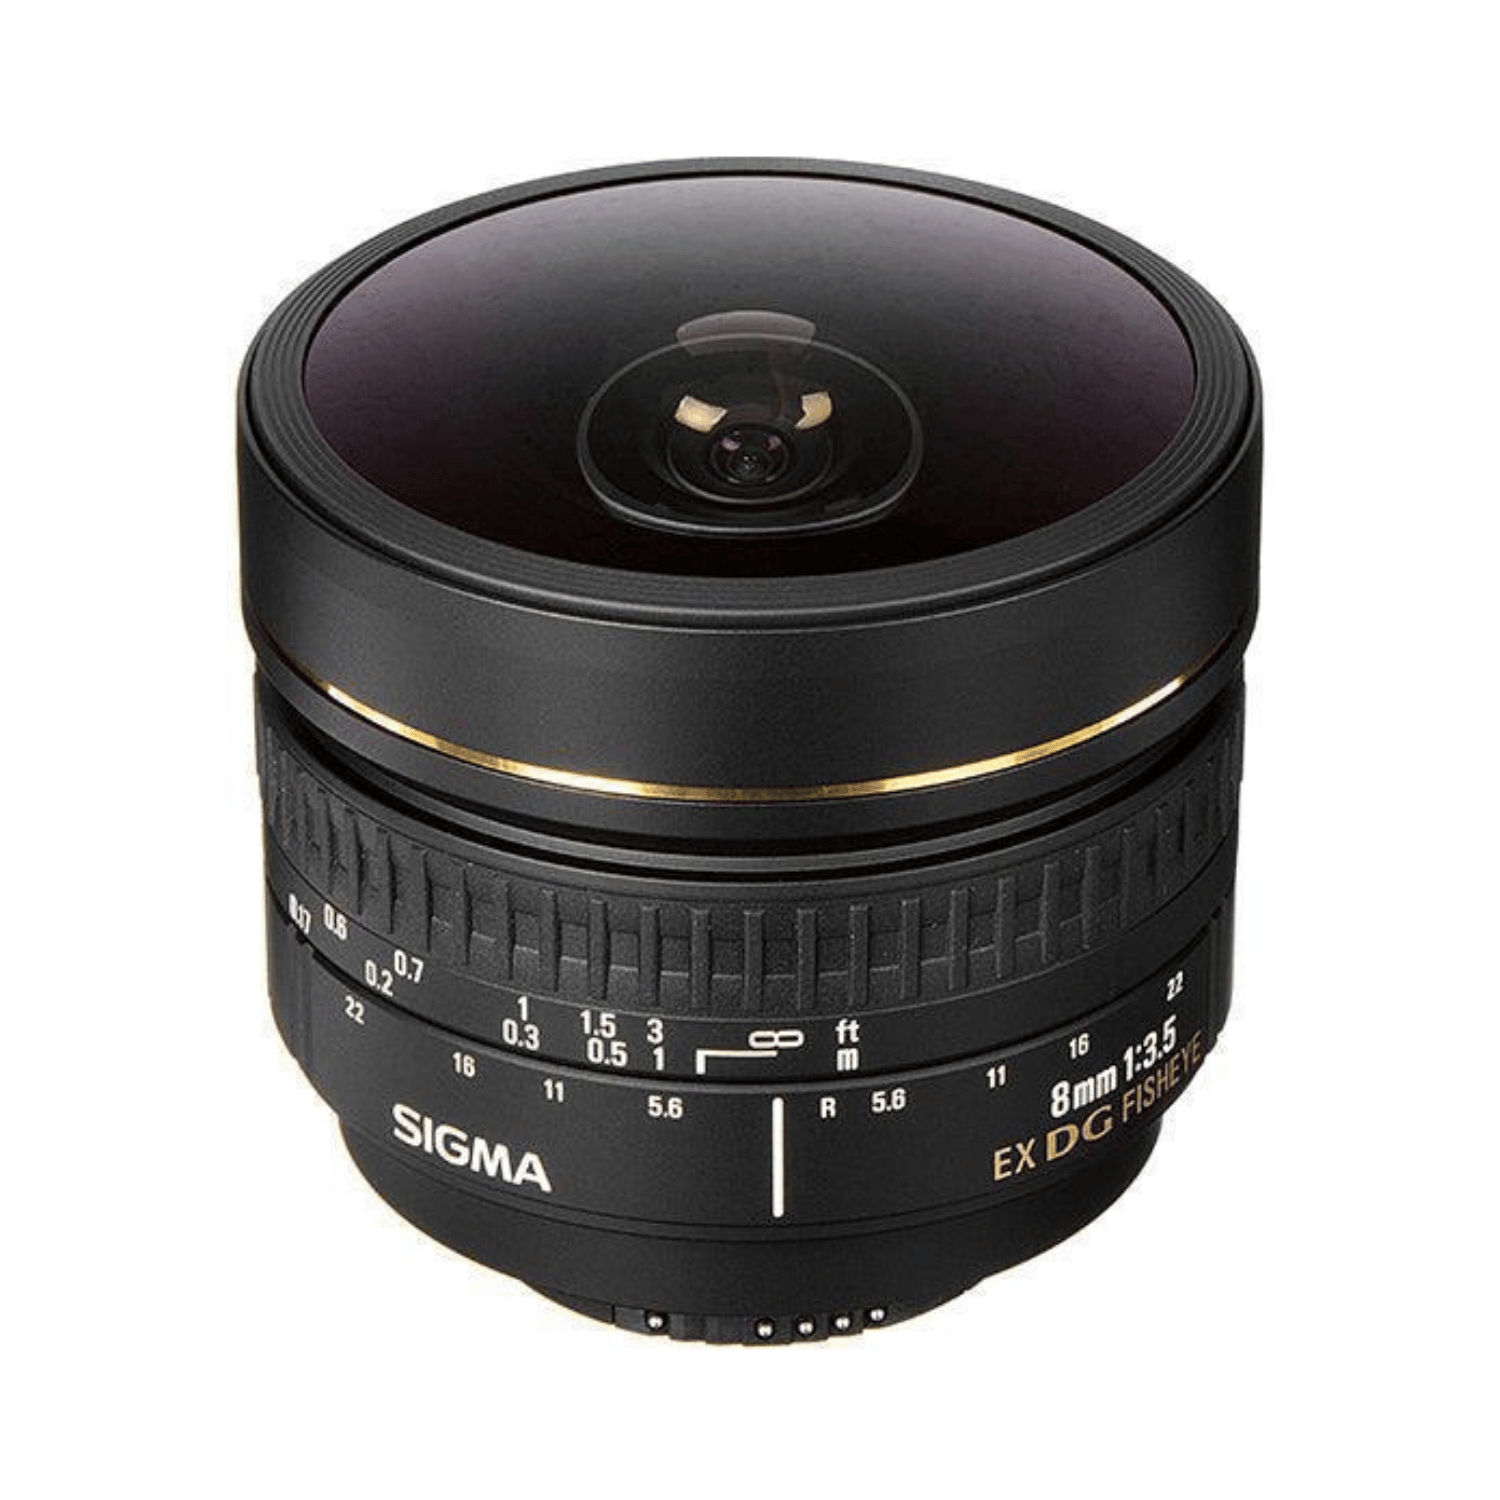 Sigma 8mm f3.5 EX DG AF Circular Fisheye - CANON EF - Garanzia M-trading 3 anni! 6030830